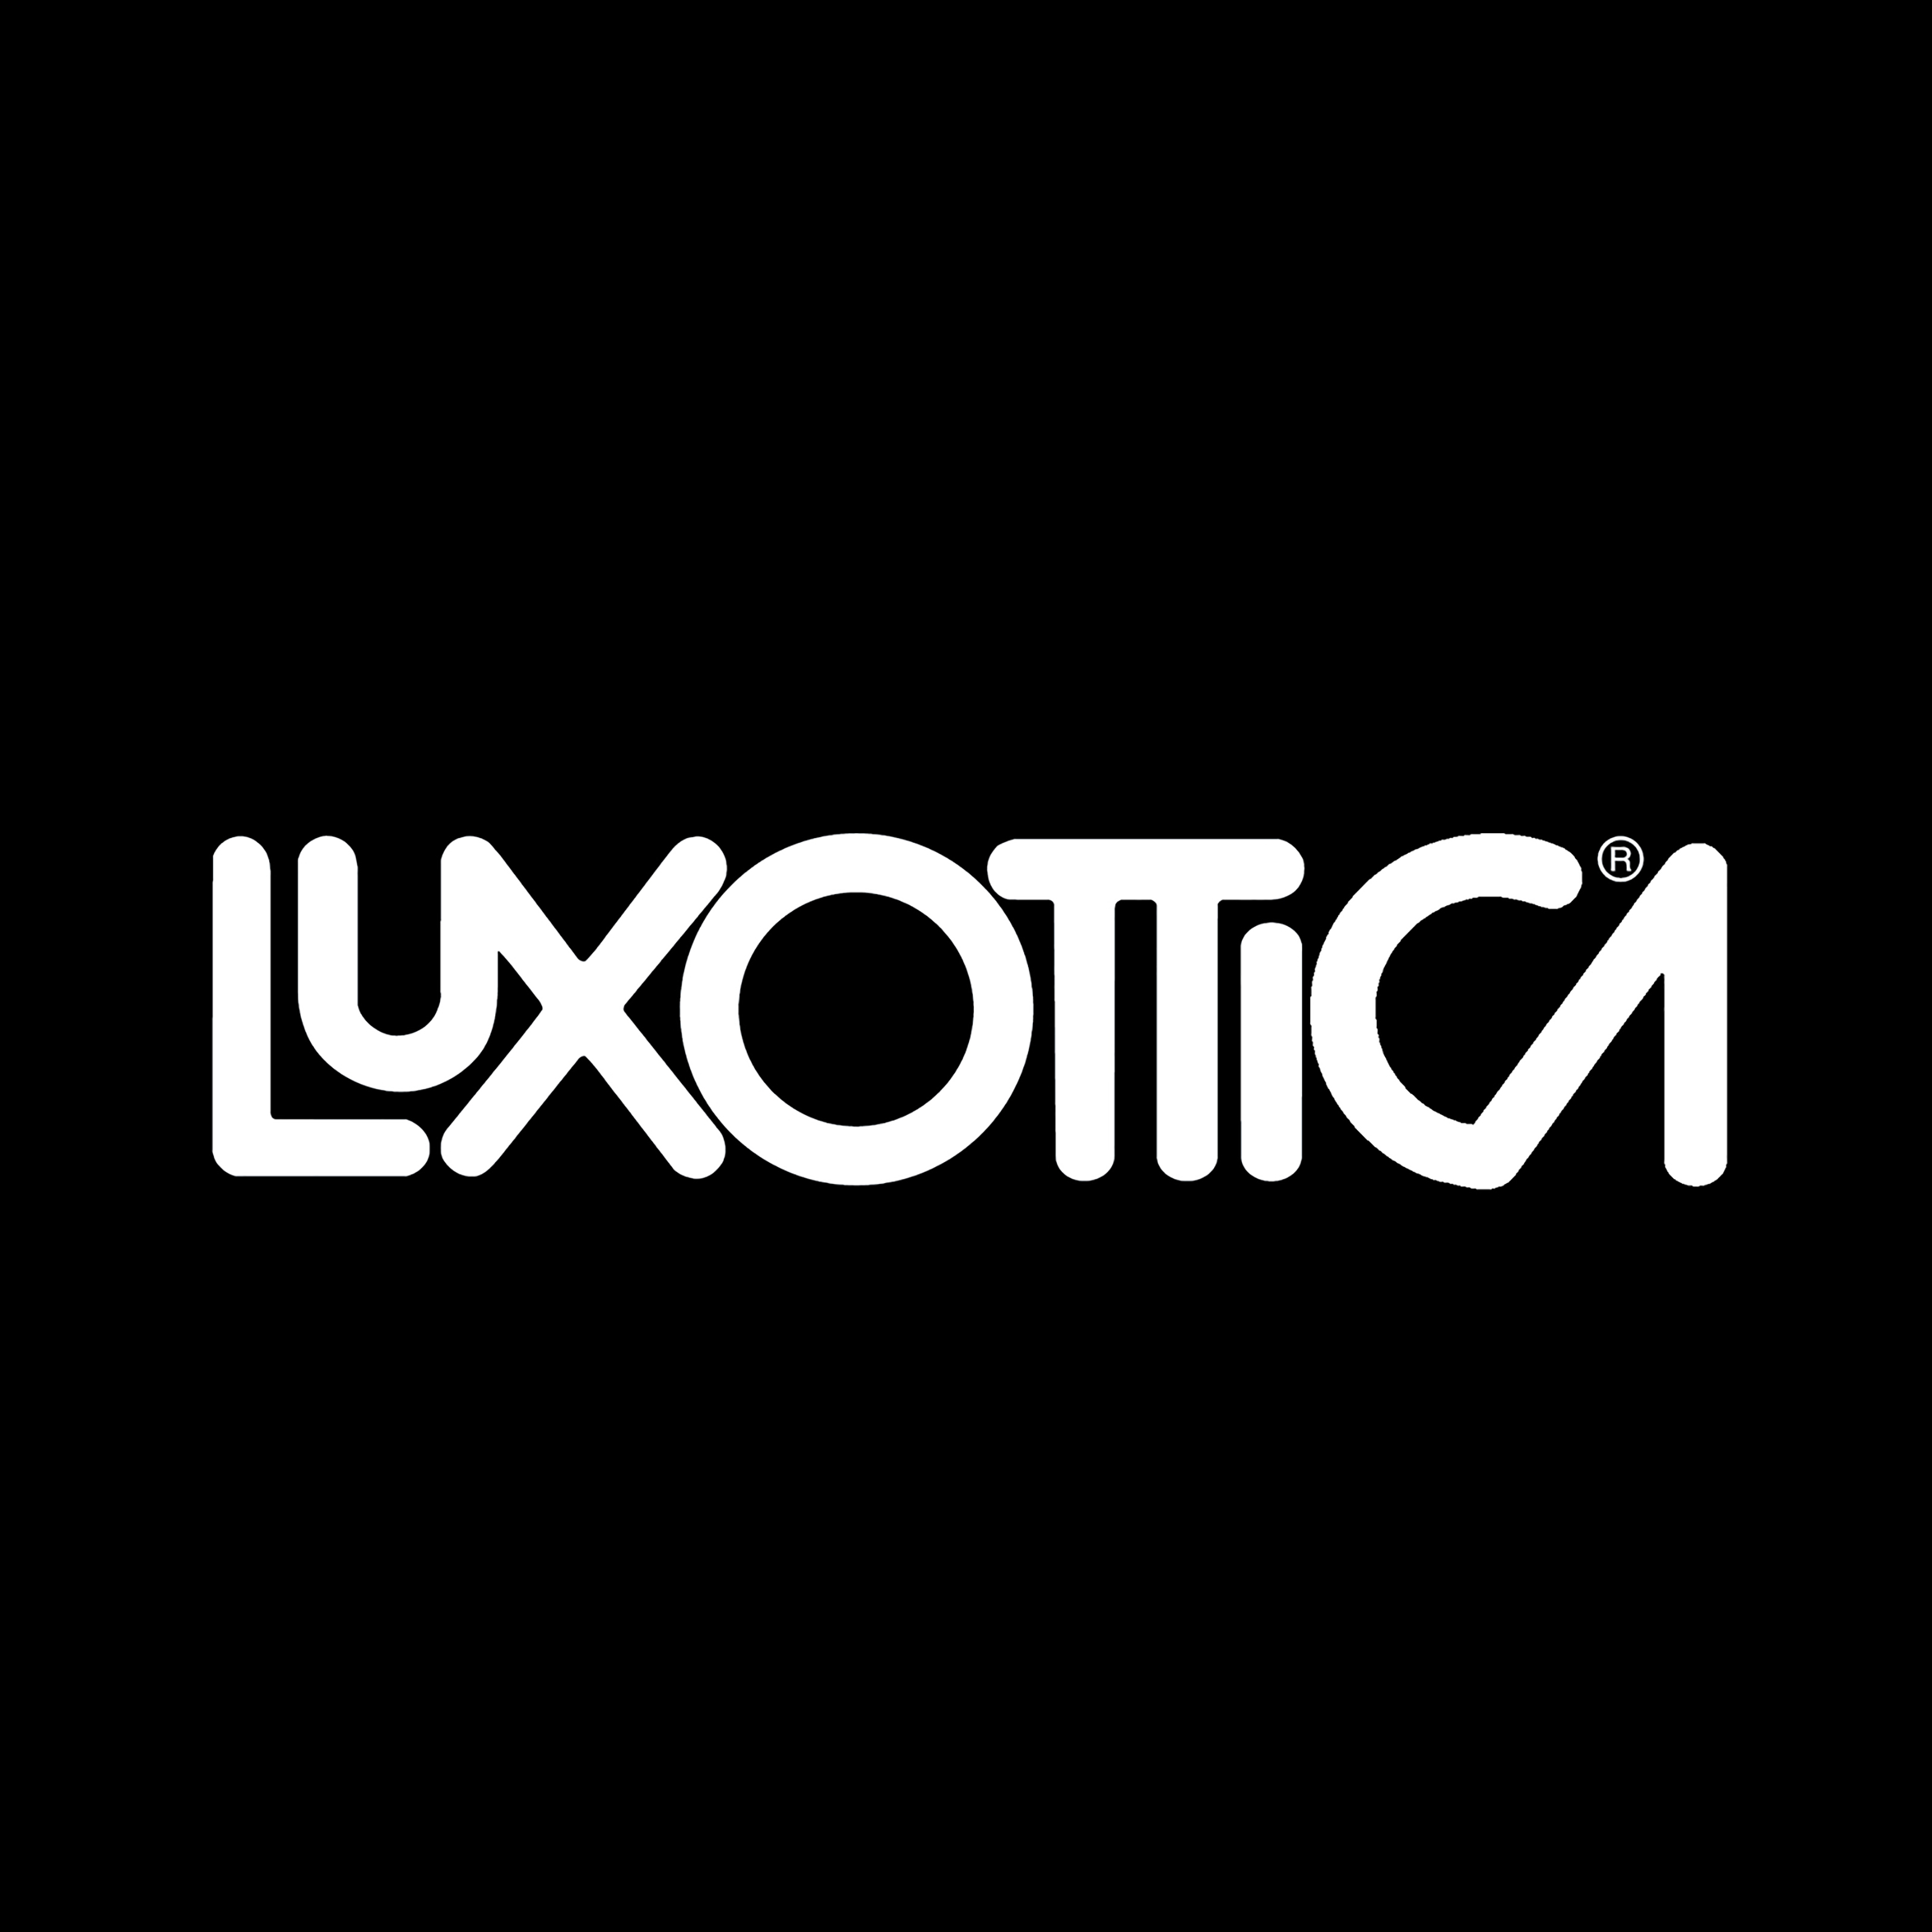 LUXOTTICA - Luxottica Days 2019